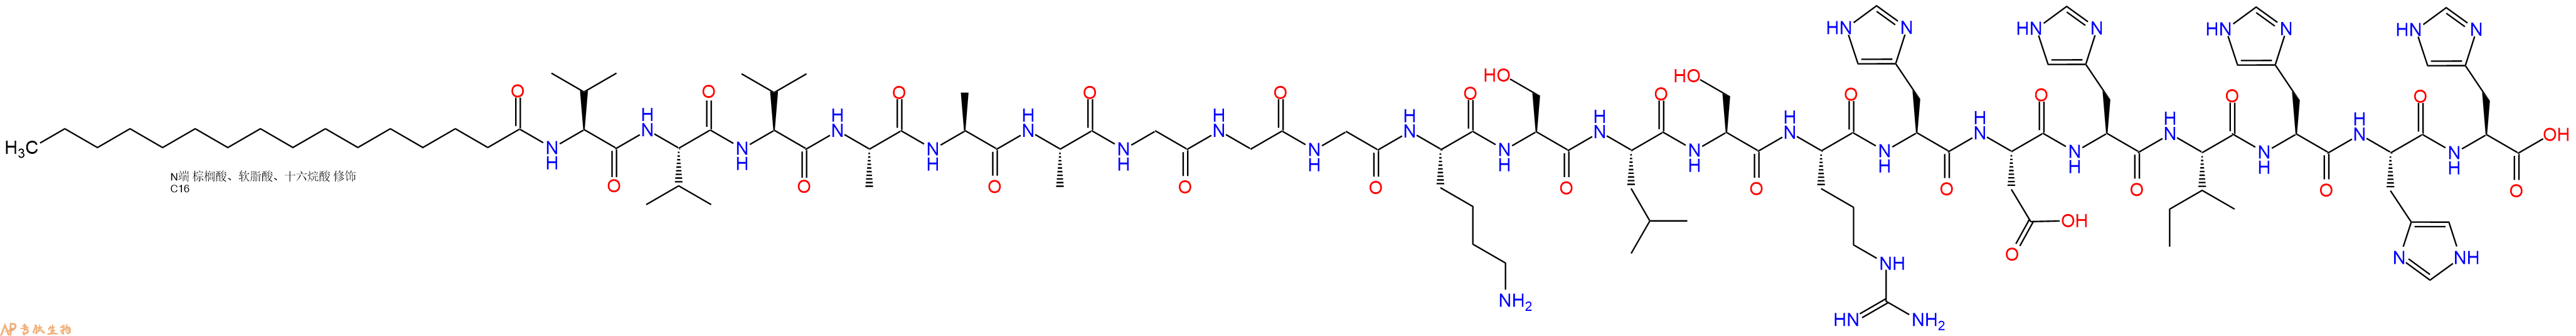 专肽生物产品棕榈酸-VVVAAAGCGKSLSRHDHIHHH